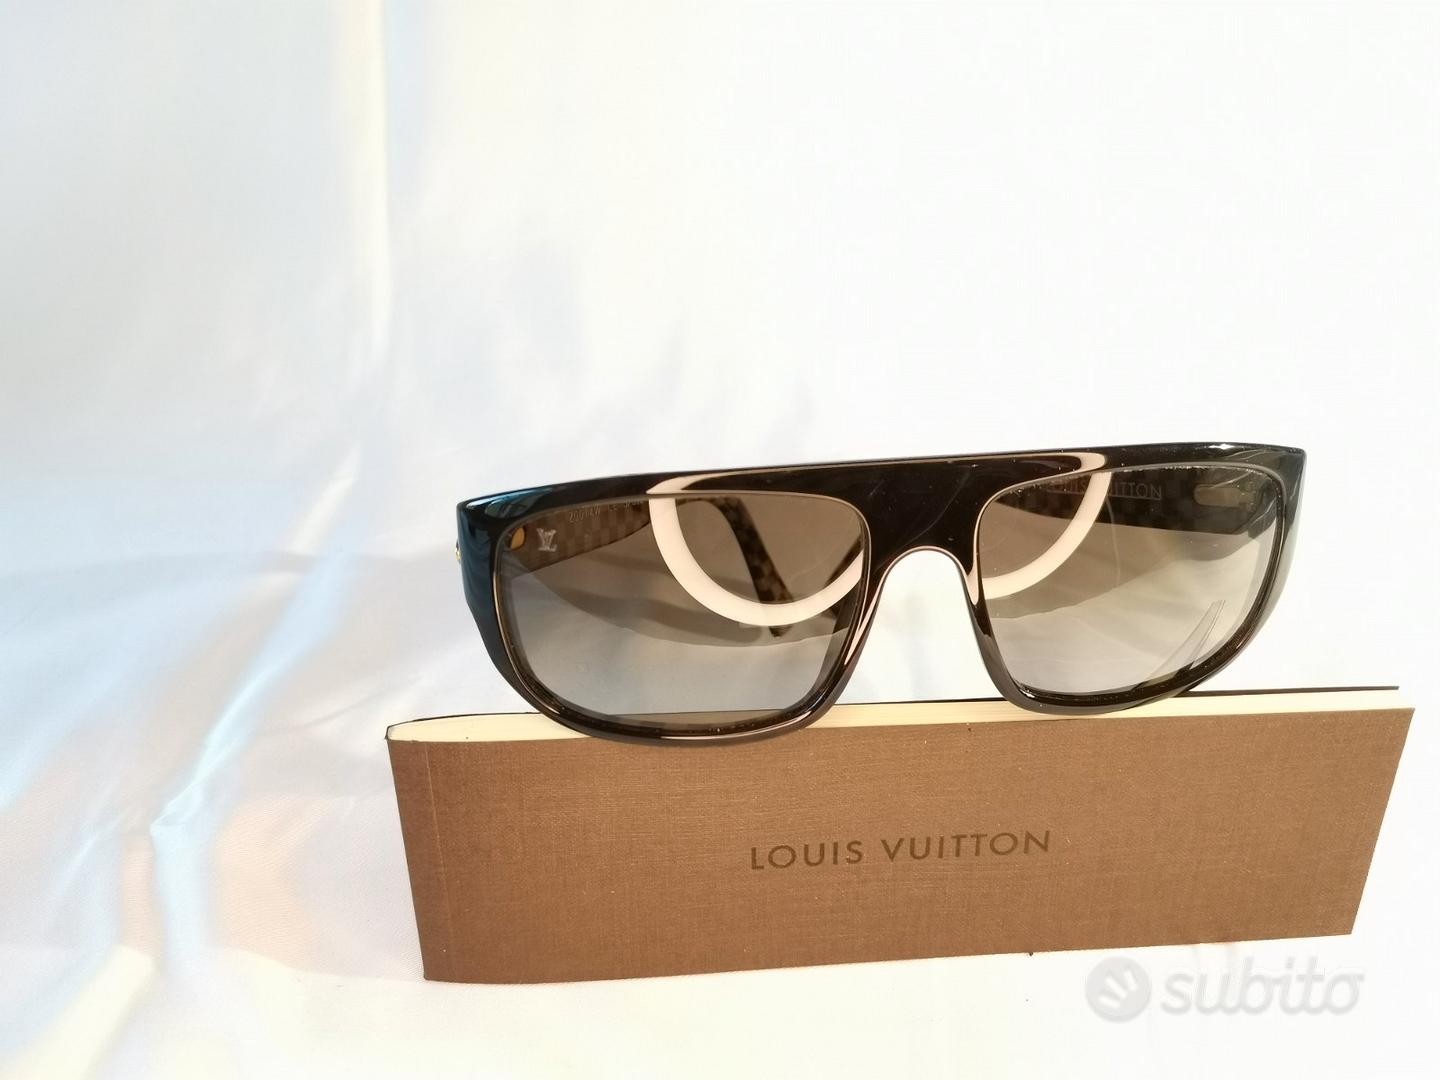 Occhiali Louis Vuitton usati uomo - Abbigliamento e Accessori In